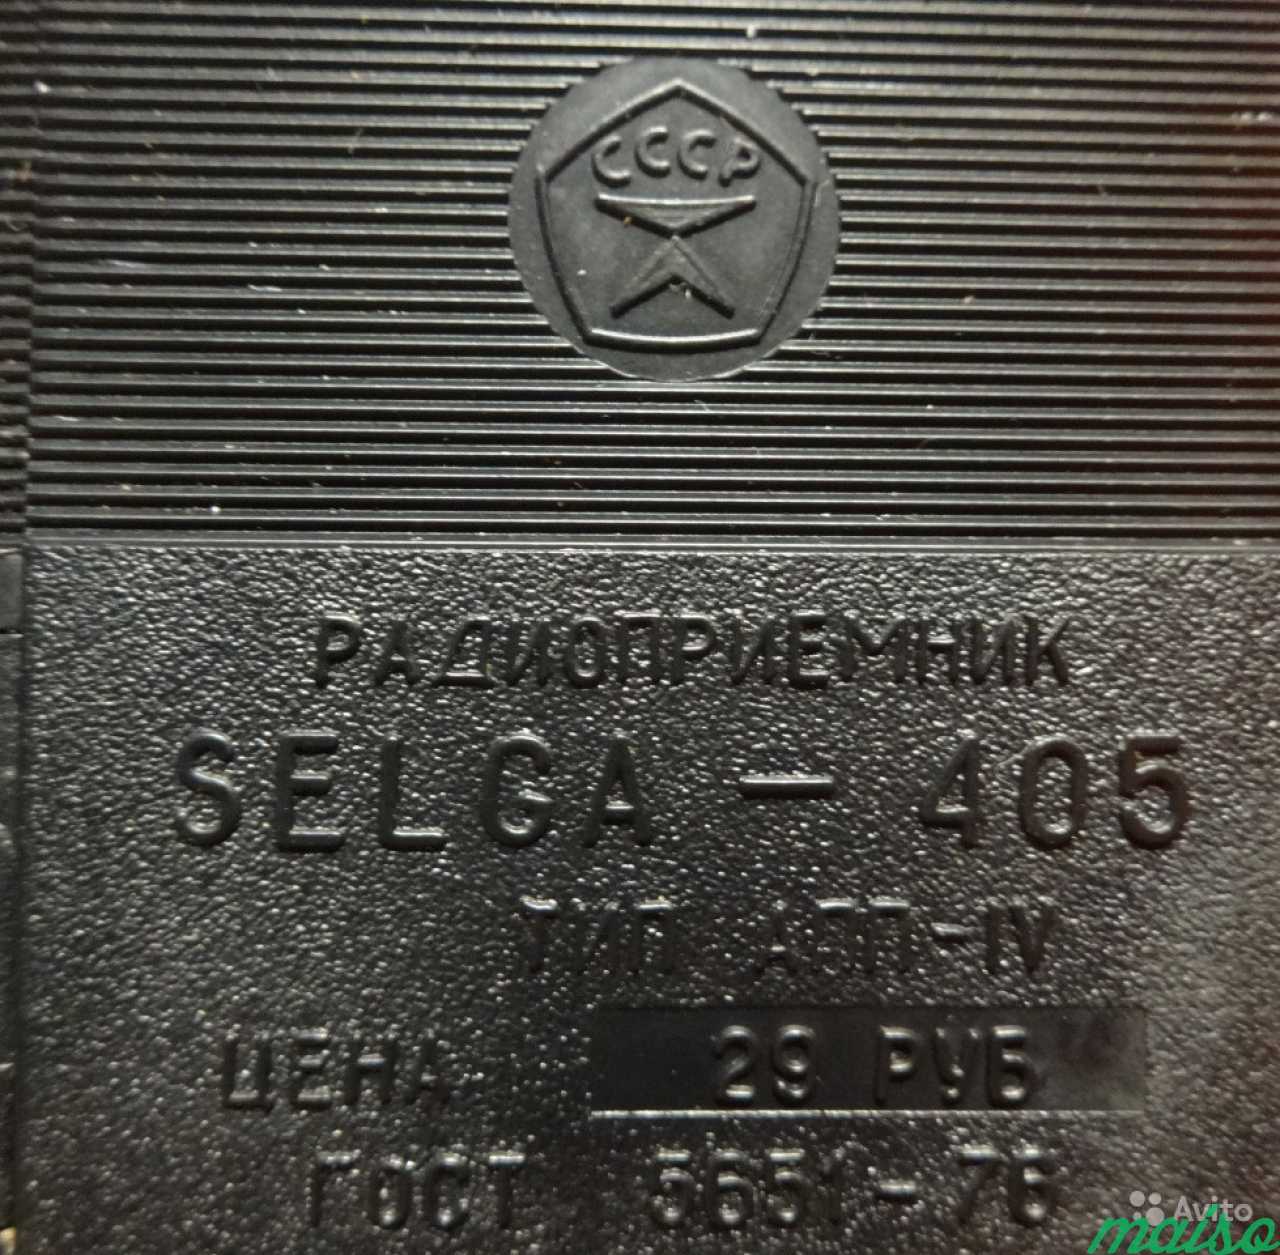 Надежный радиоприемник selga-405. Качество СССР в Санкт-Петербурге. Фото 2